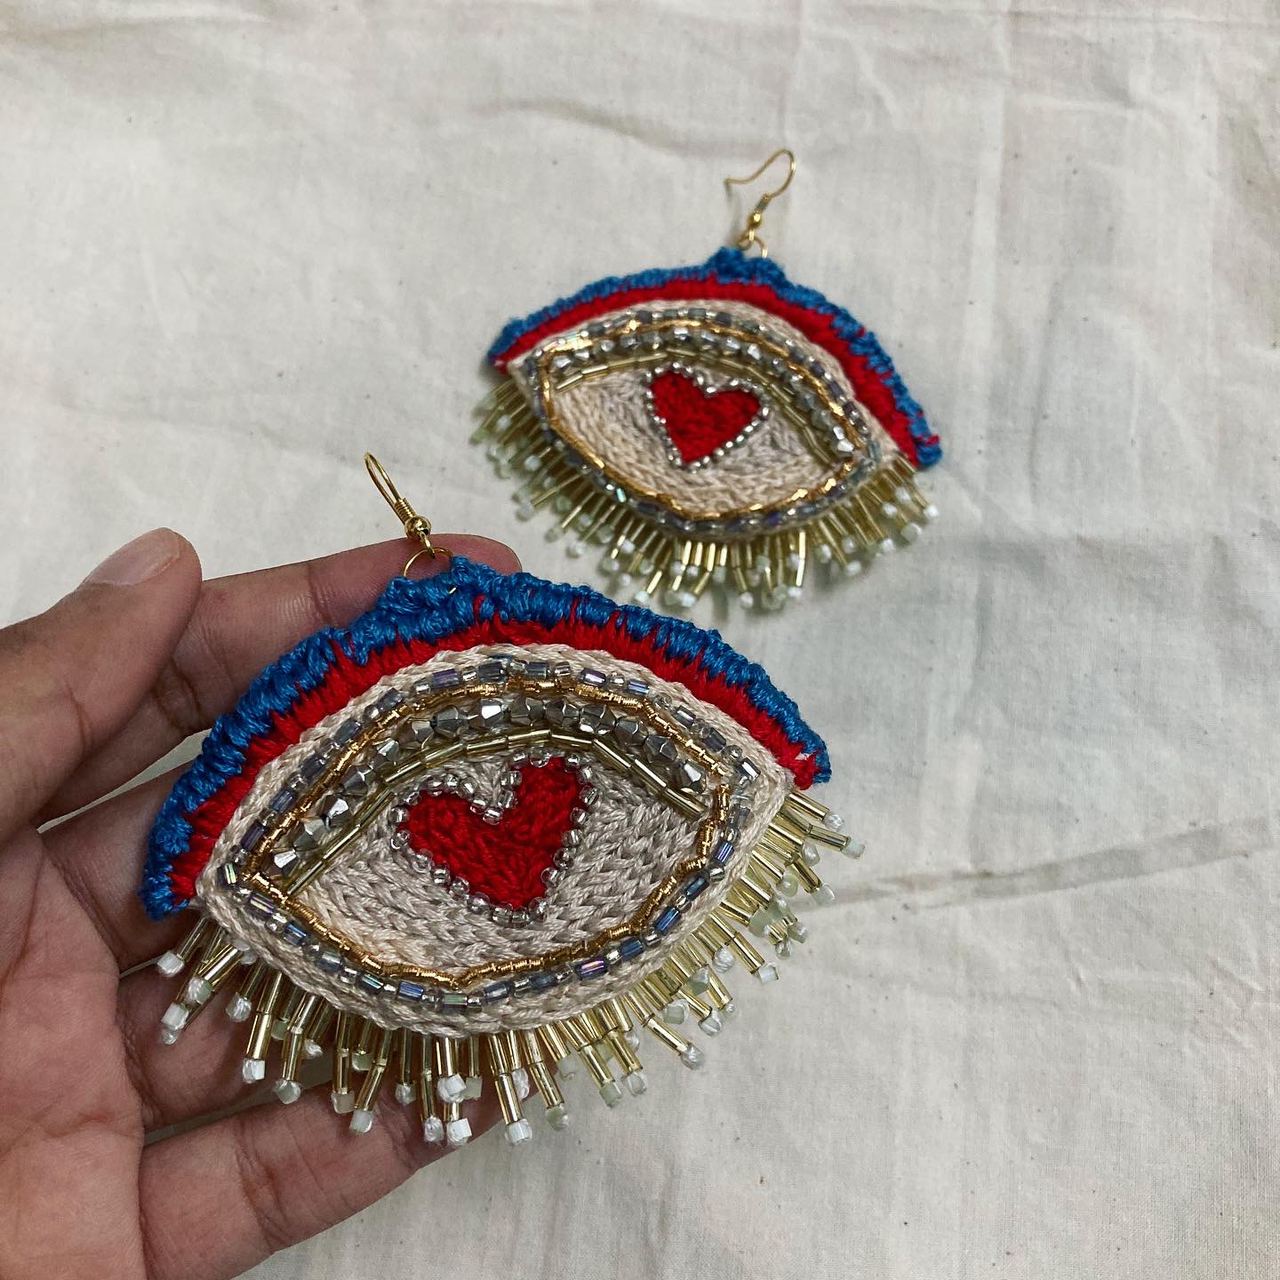 Heart Eye Earrings